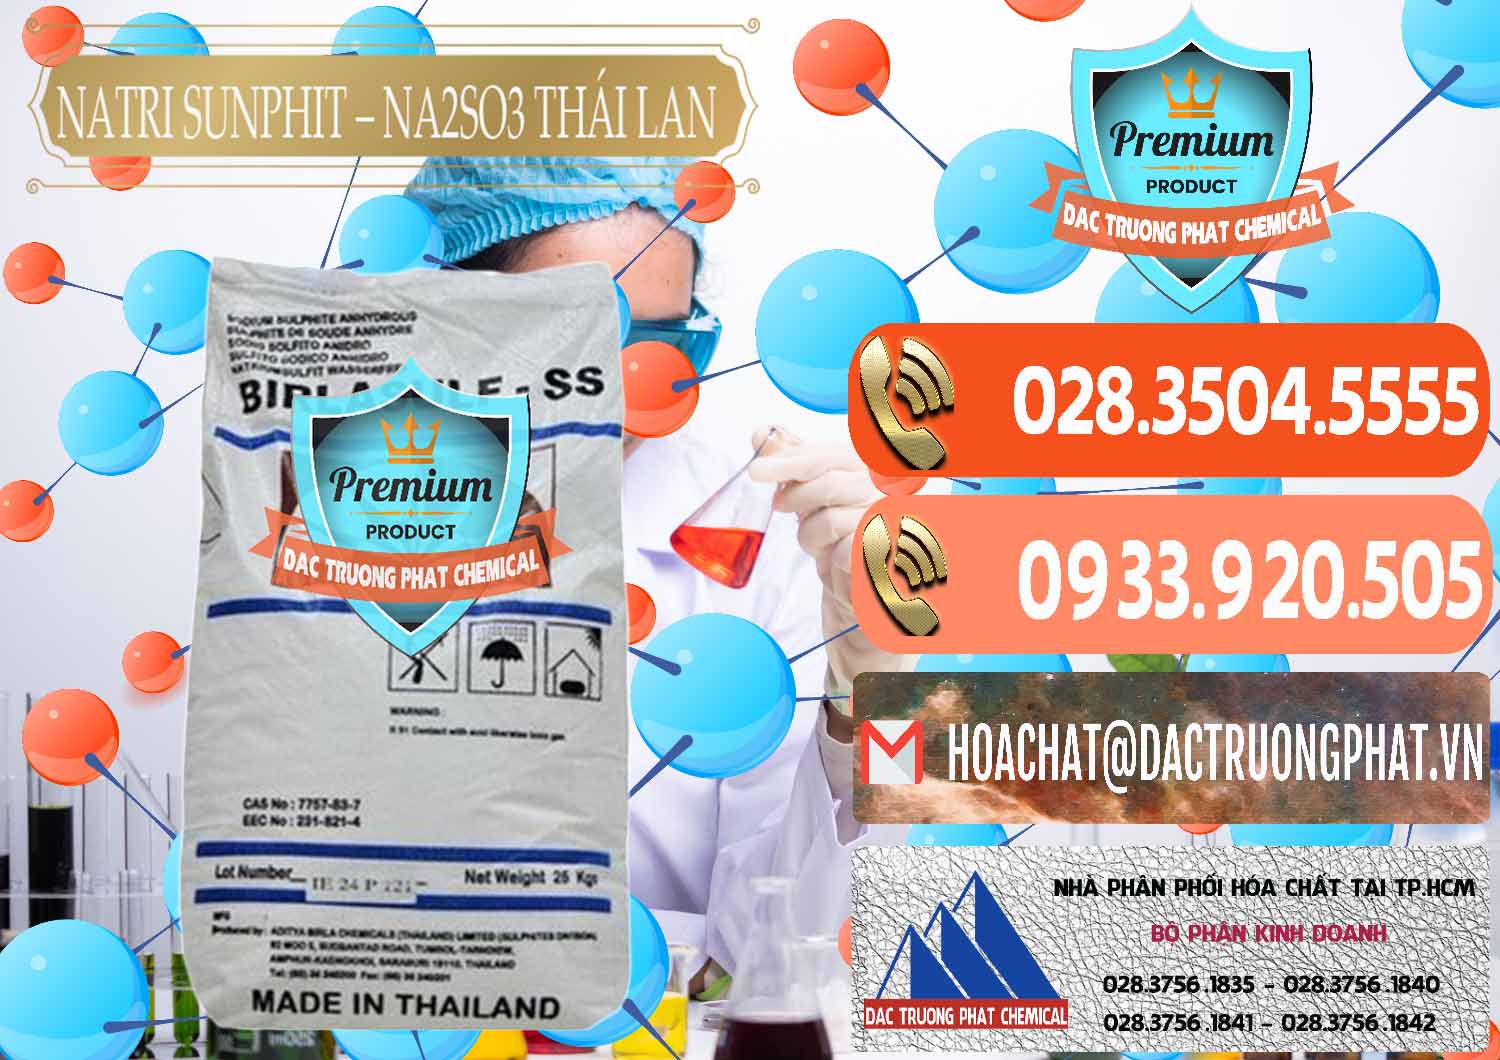 Cty chuyên kinh doanh ( bán ) Natri Sunphit - NA2SO3 Thái Lan - 0105 - Cty chuyên phân phối - kinh doanh hóa chất tại TP.HCM - hoachatmientay.com